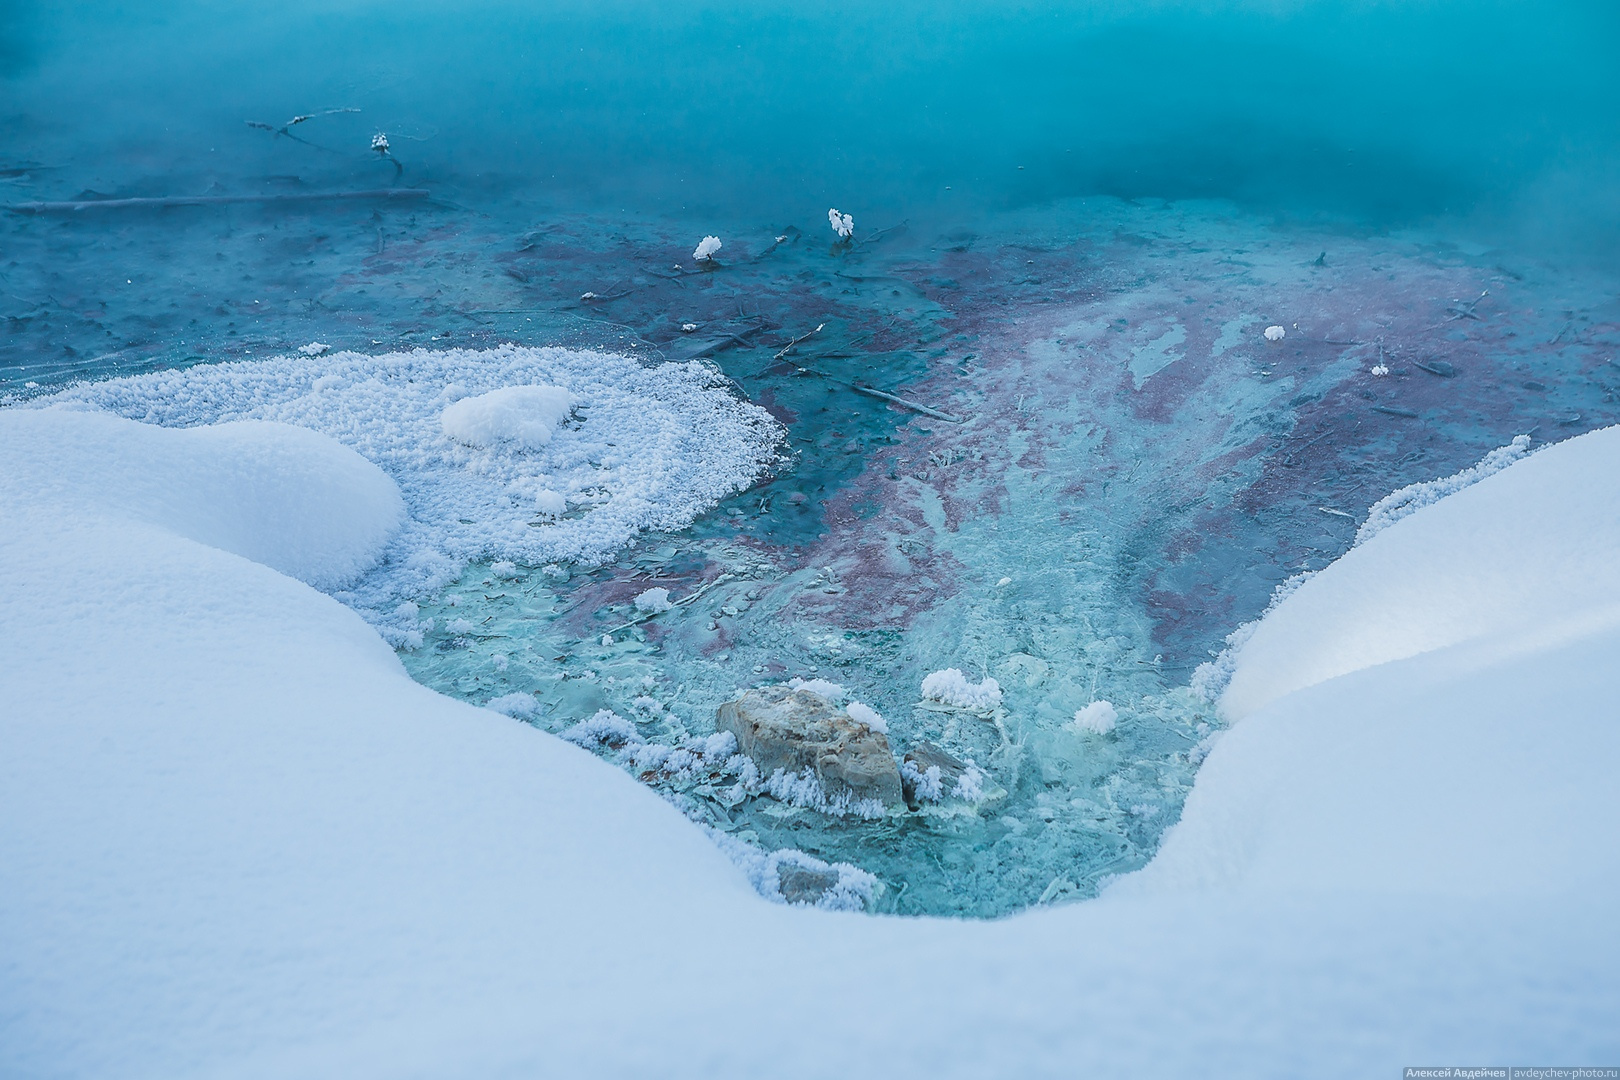 Голубое озеро Сергиевский район зимой